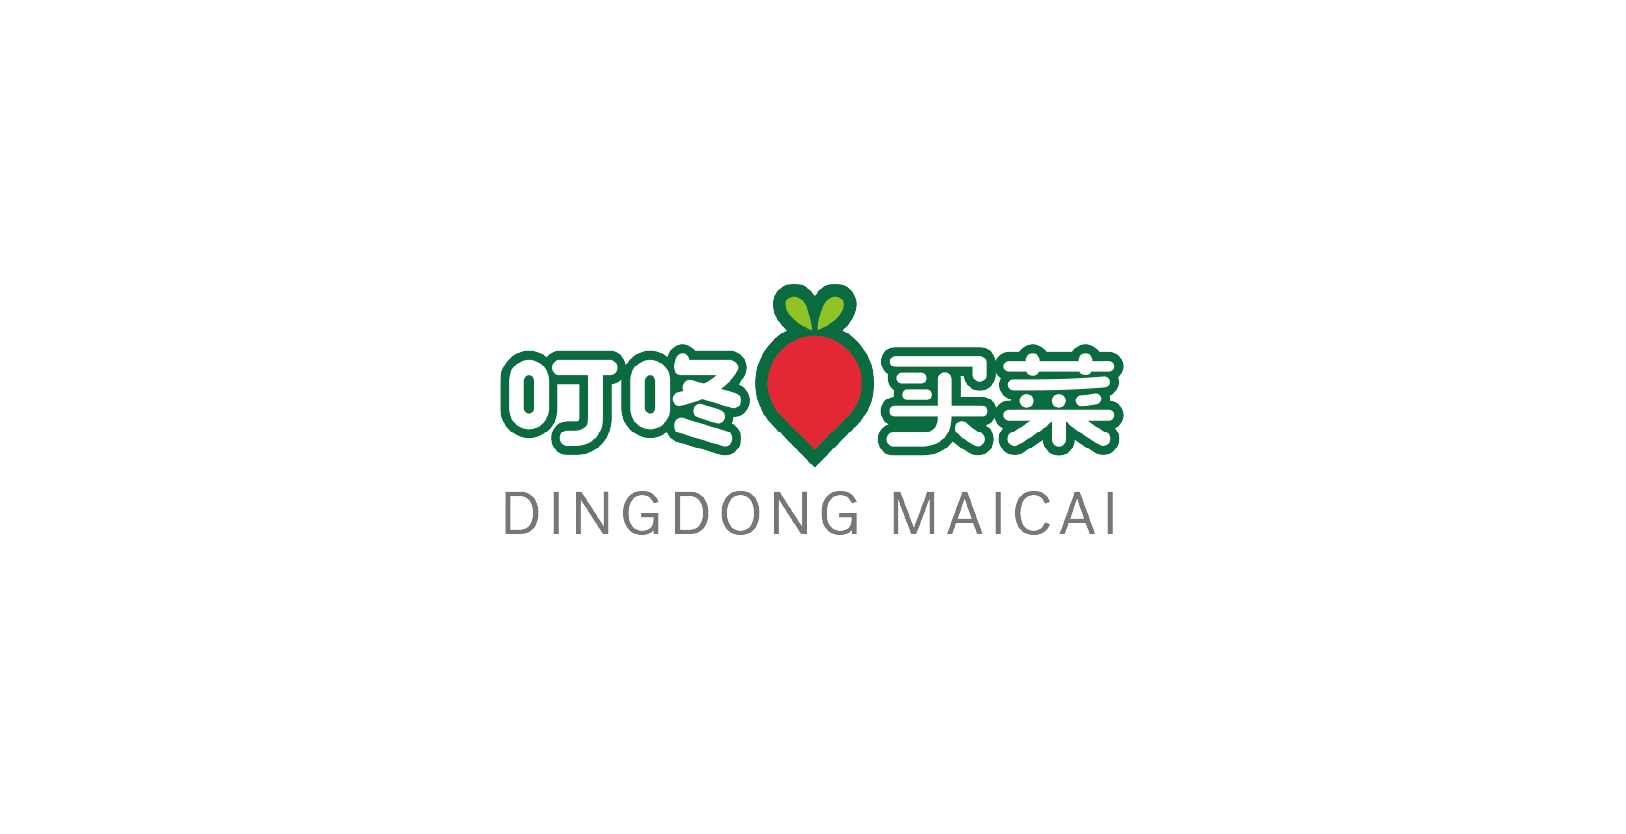 VisionFund Portfolio Company Dingdong Maicai's Logo